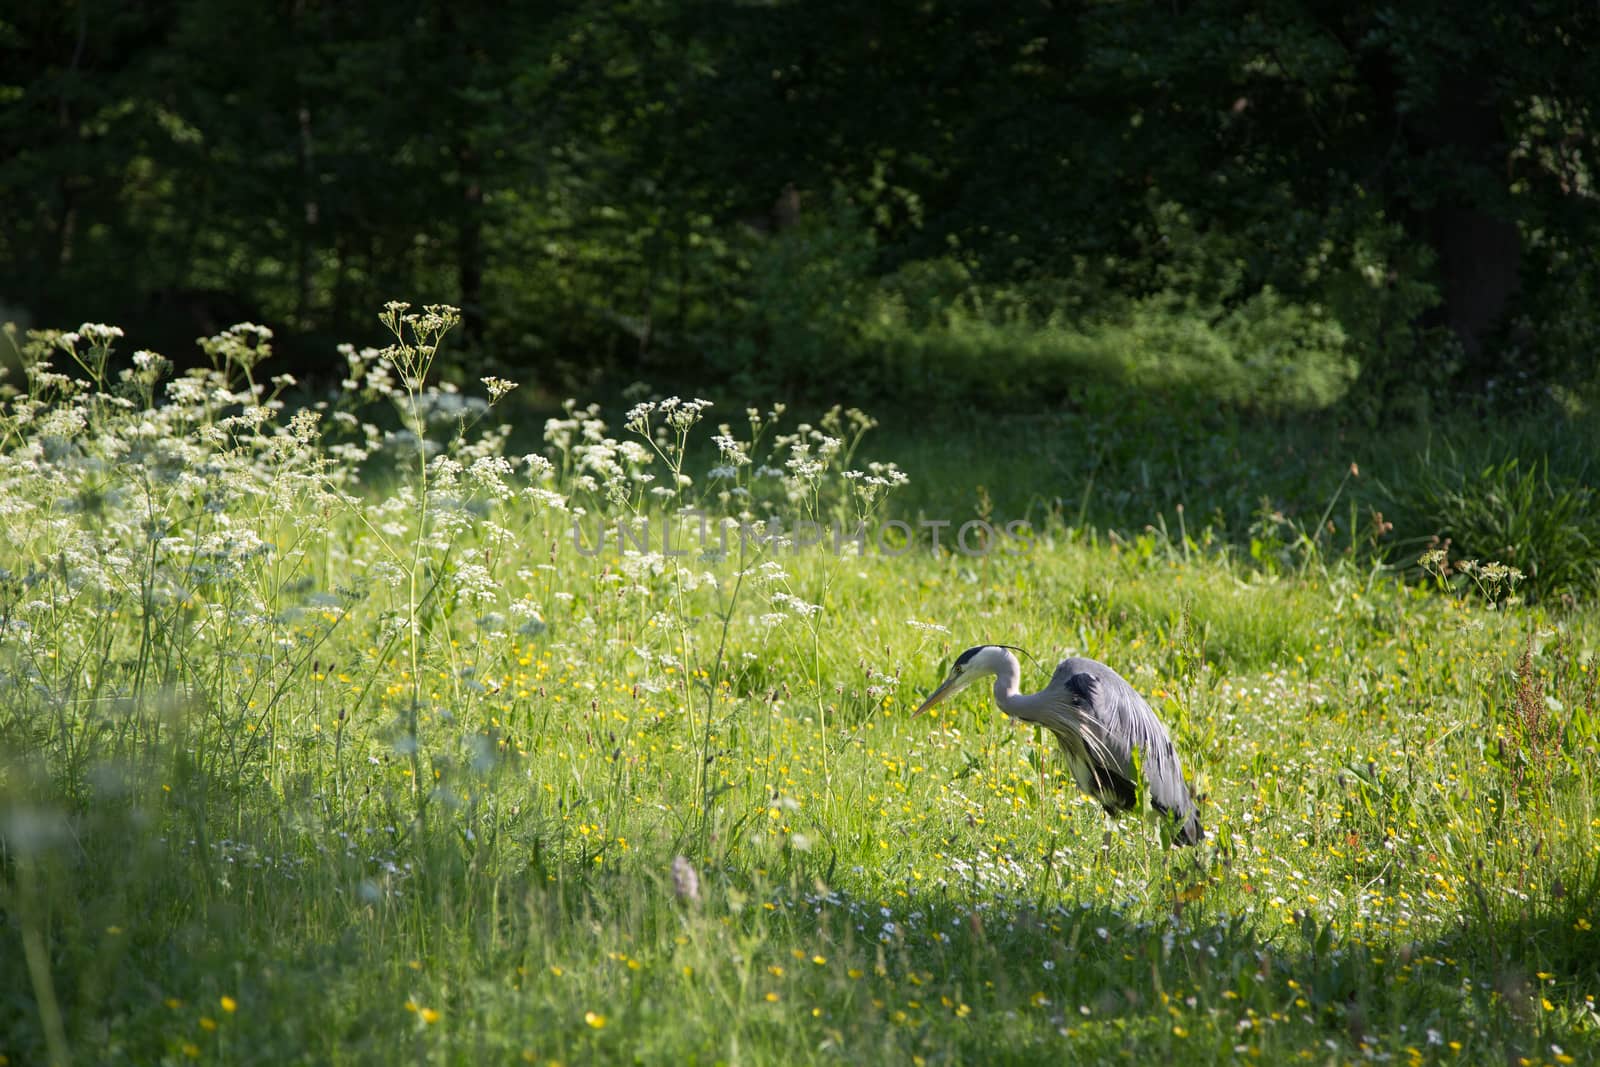 Grey Heron in Frederiksberg Park in Denmark